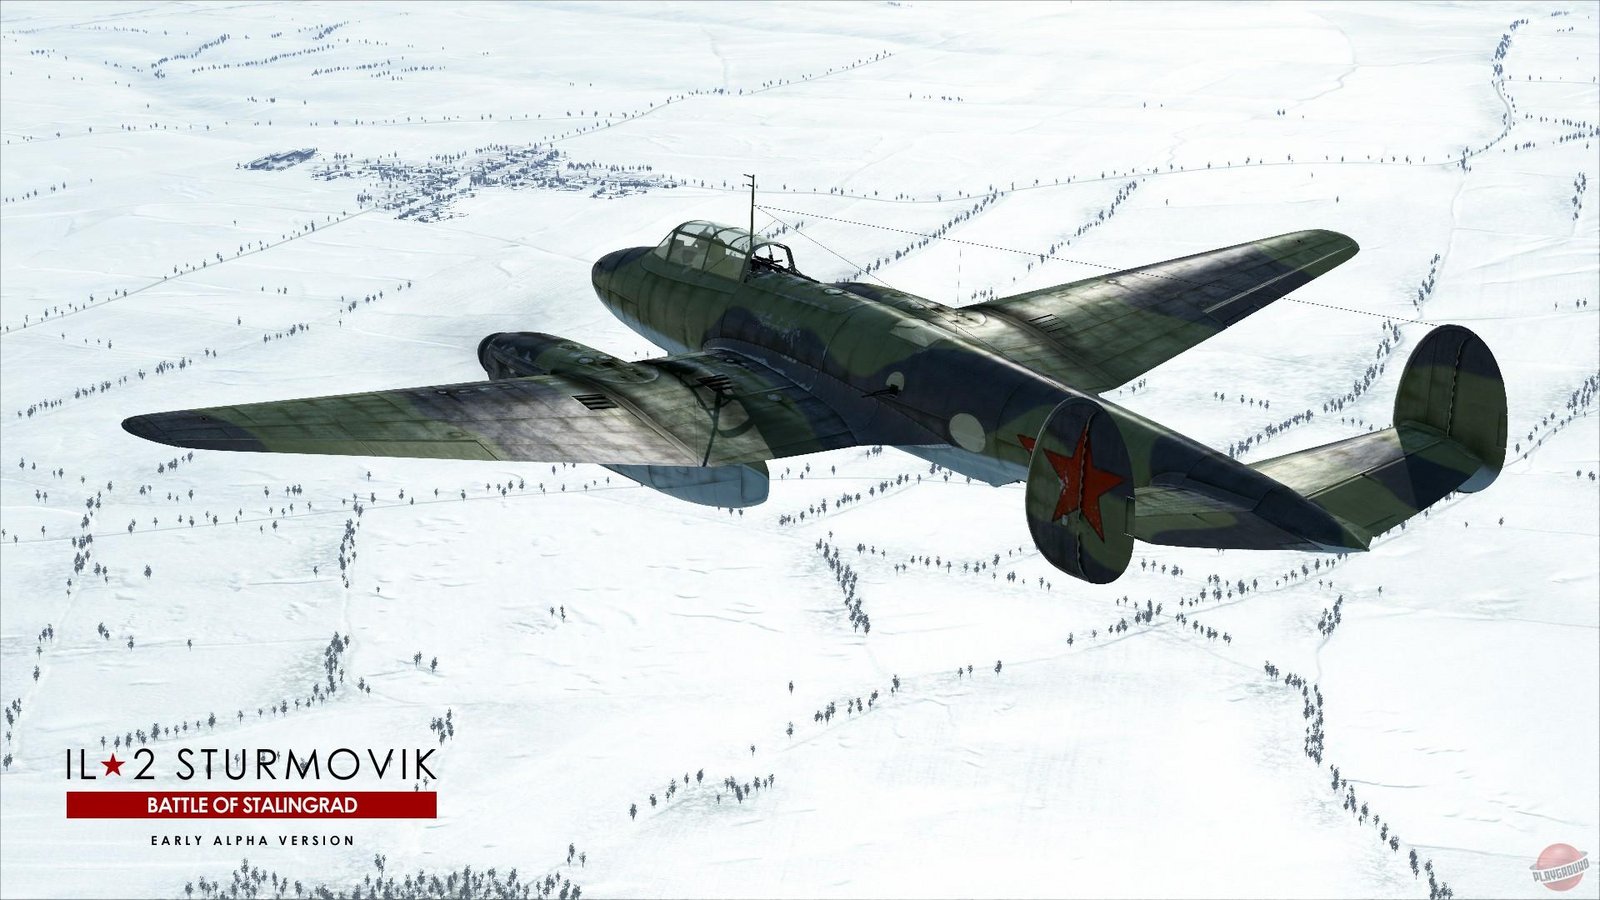 IL-2 Sturmovik: Battle of Moscow